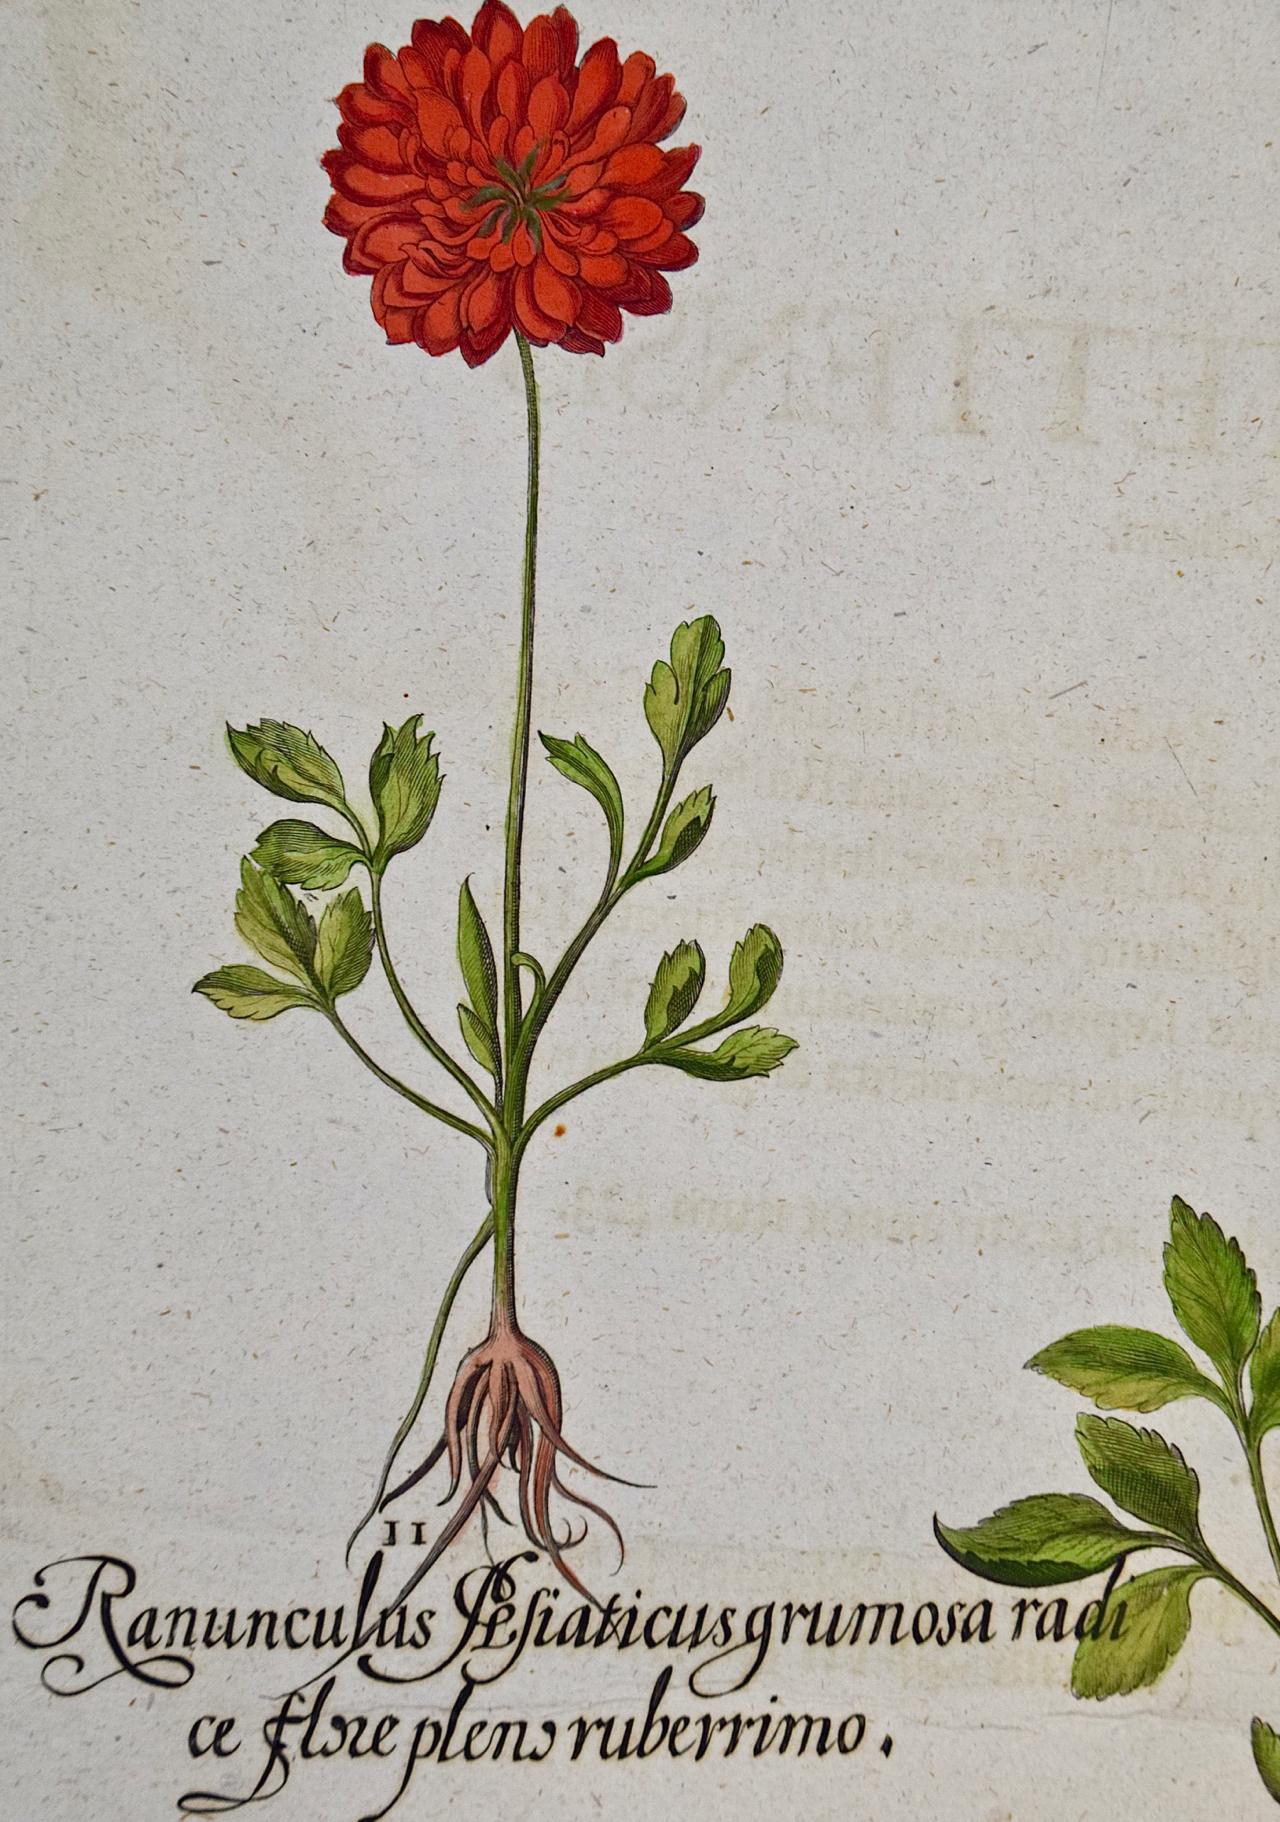 Schmetterlingsblumen: Ein handkolorierter botanischer Stich von Besler aus dem 18. Jahrhundert – Print von Basilius Besler